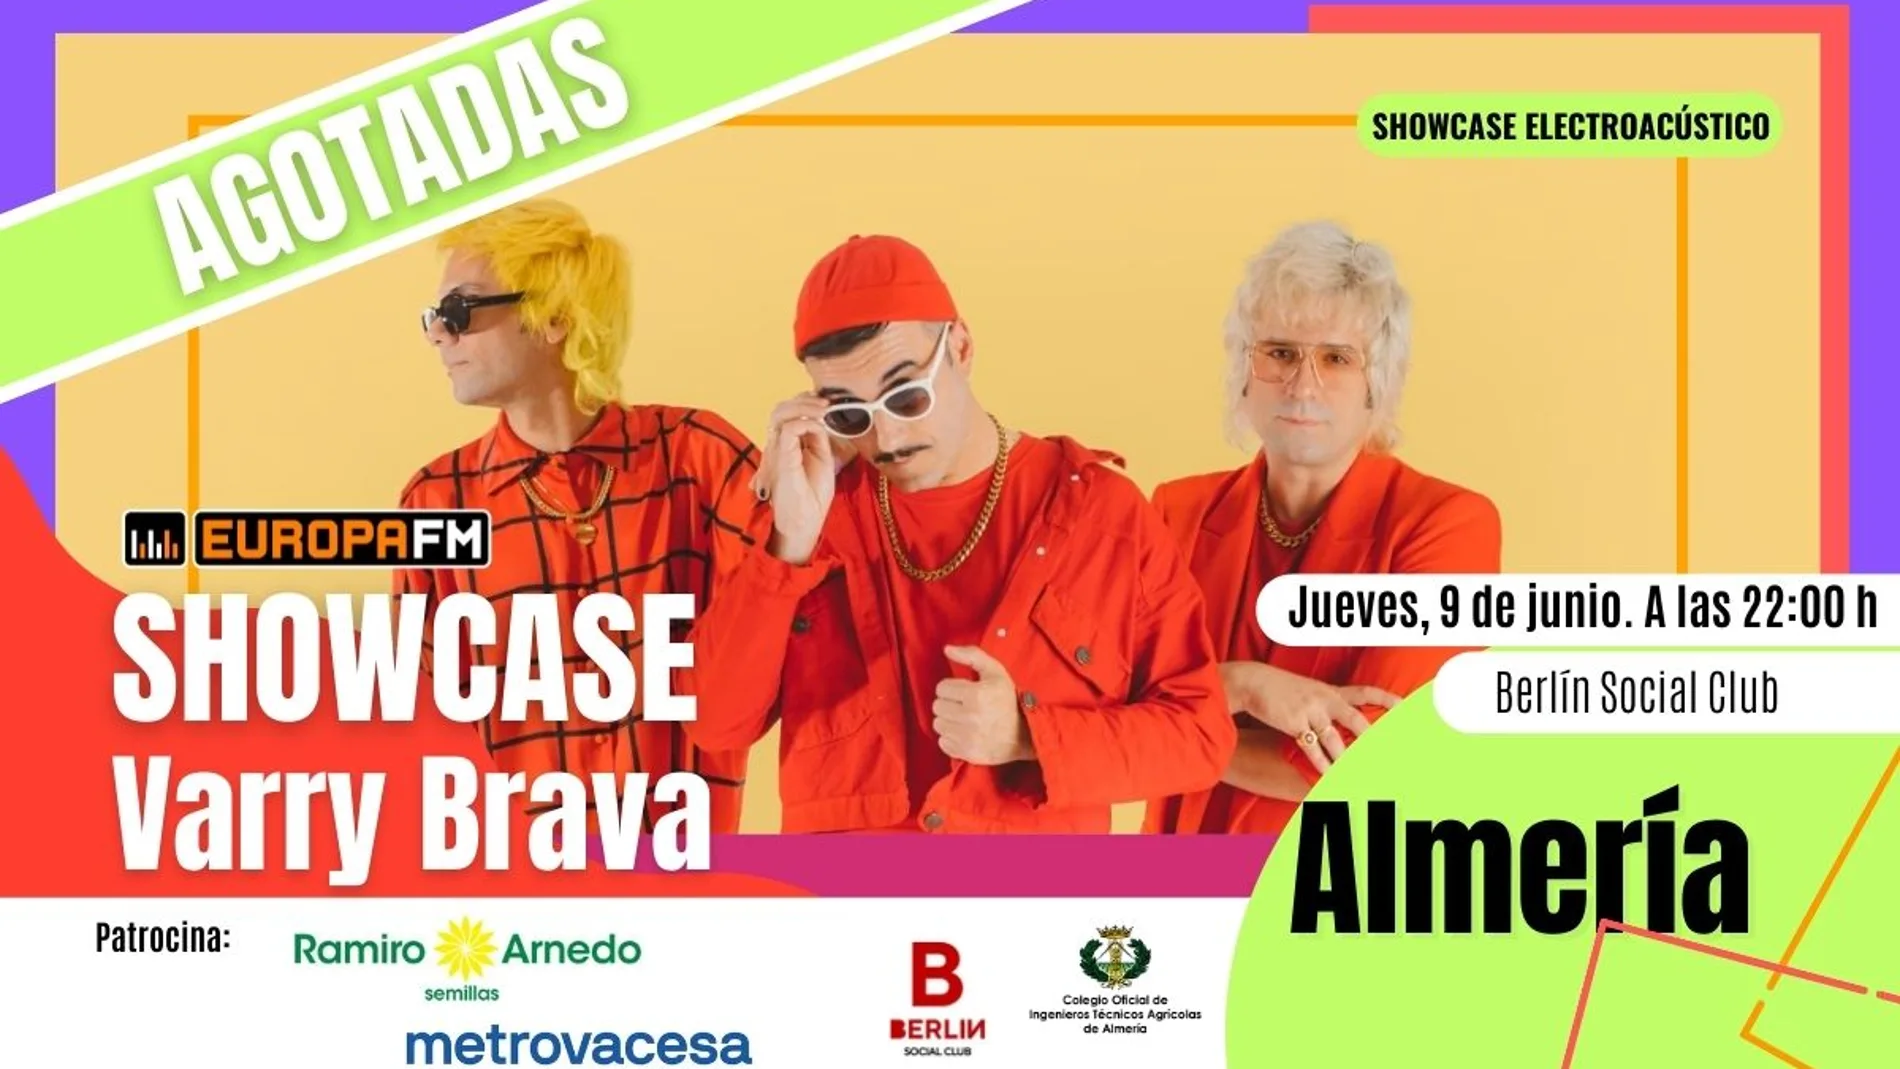 Agotadas las invitaciones para ver a Varry Brava el 9 de junio en Almería 